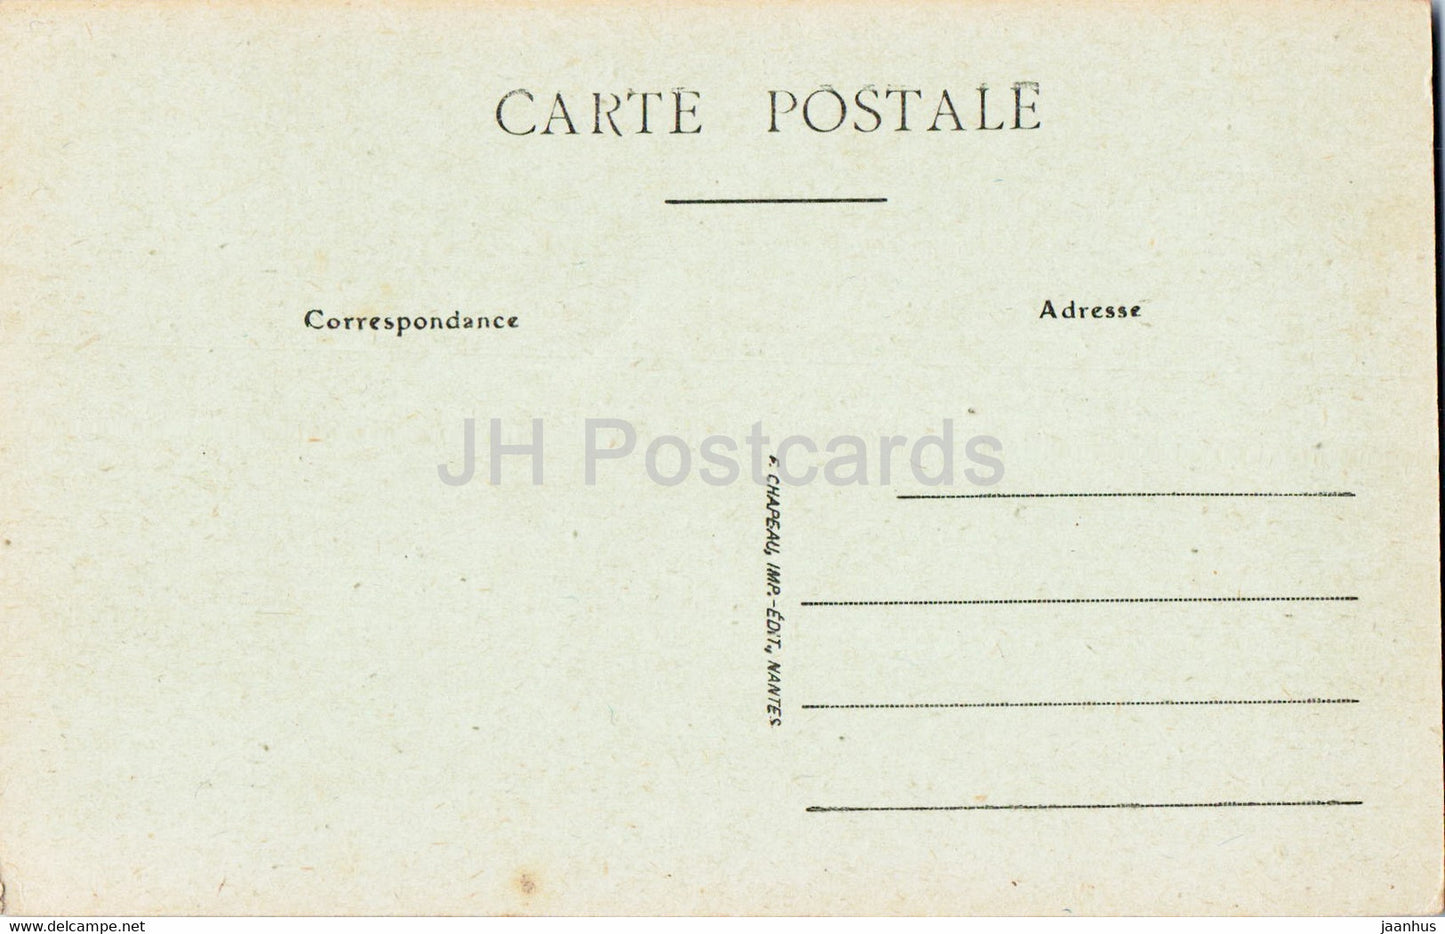 Nantes - Le Port pres la Gare de la Bourse - Schiff - Boot - 511 - alte Postkarte - Frankreich - unbenutzt